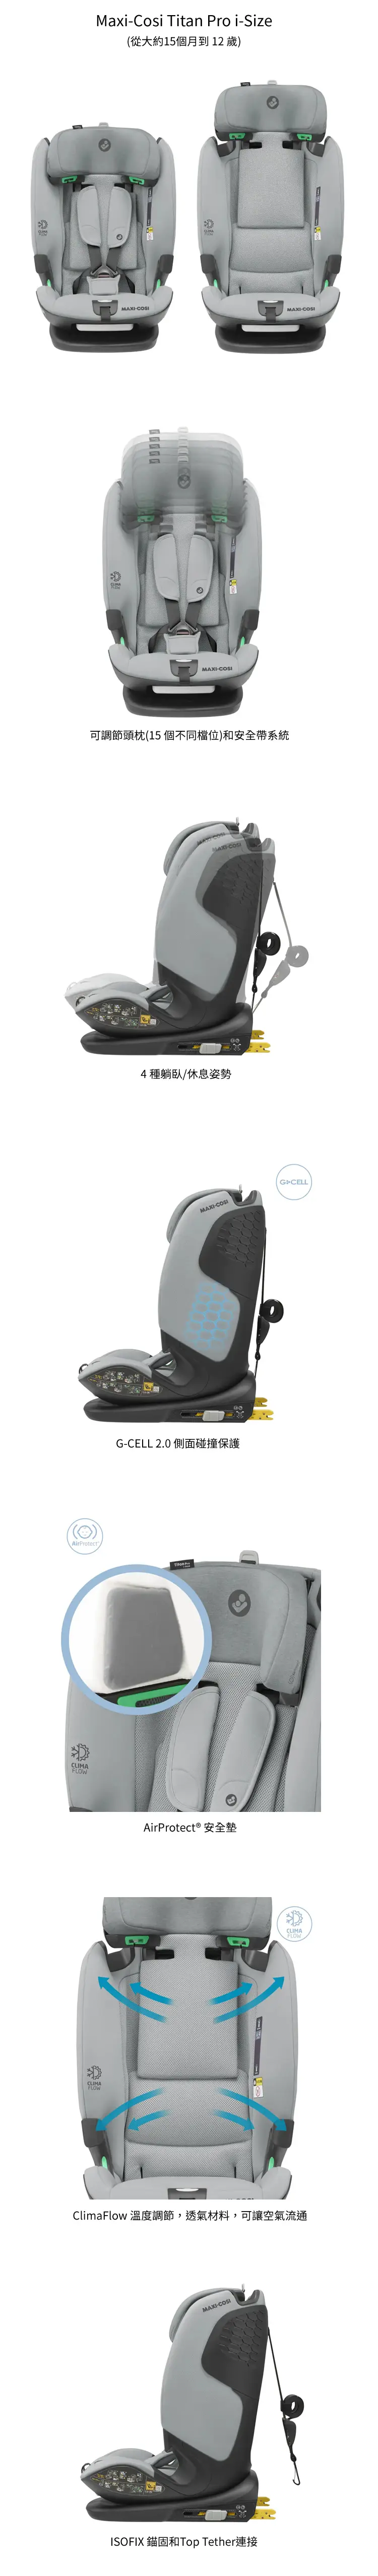 Maxi Cosi Titan Pro i-size 汽車座椅(